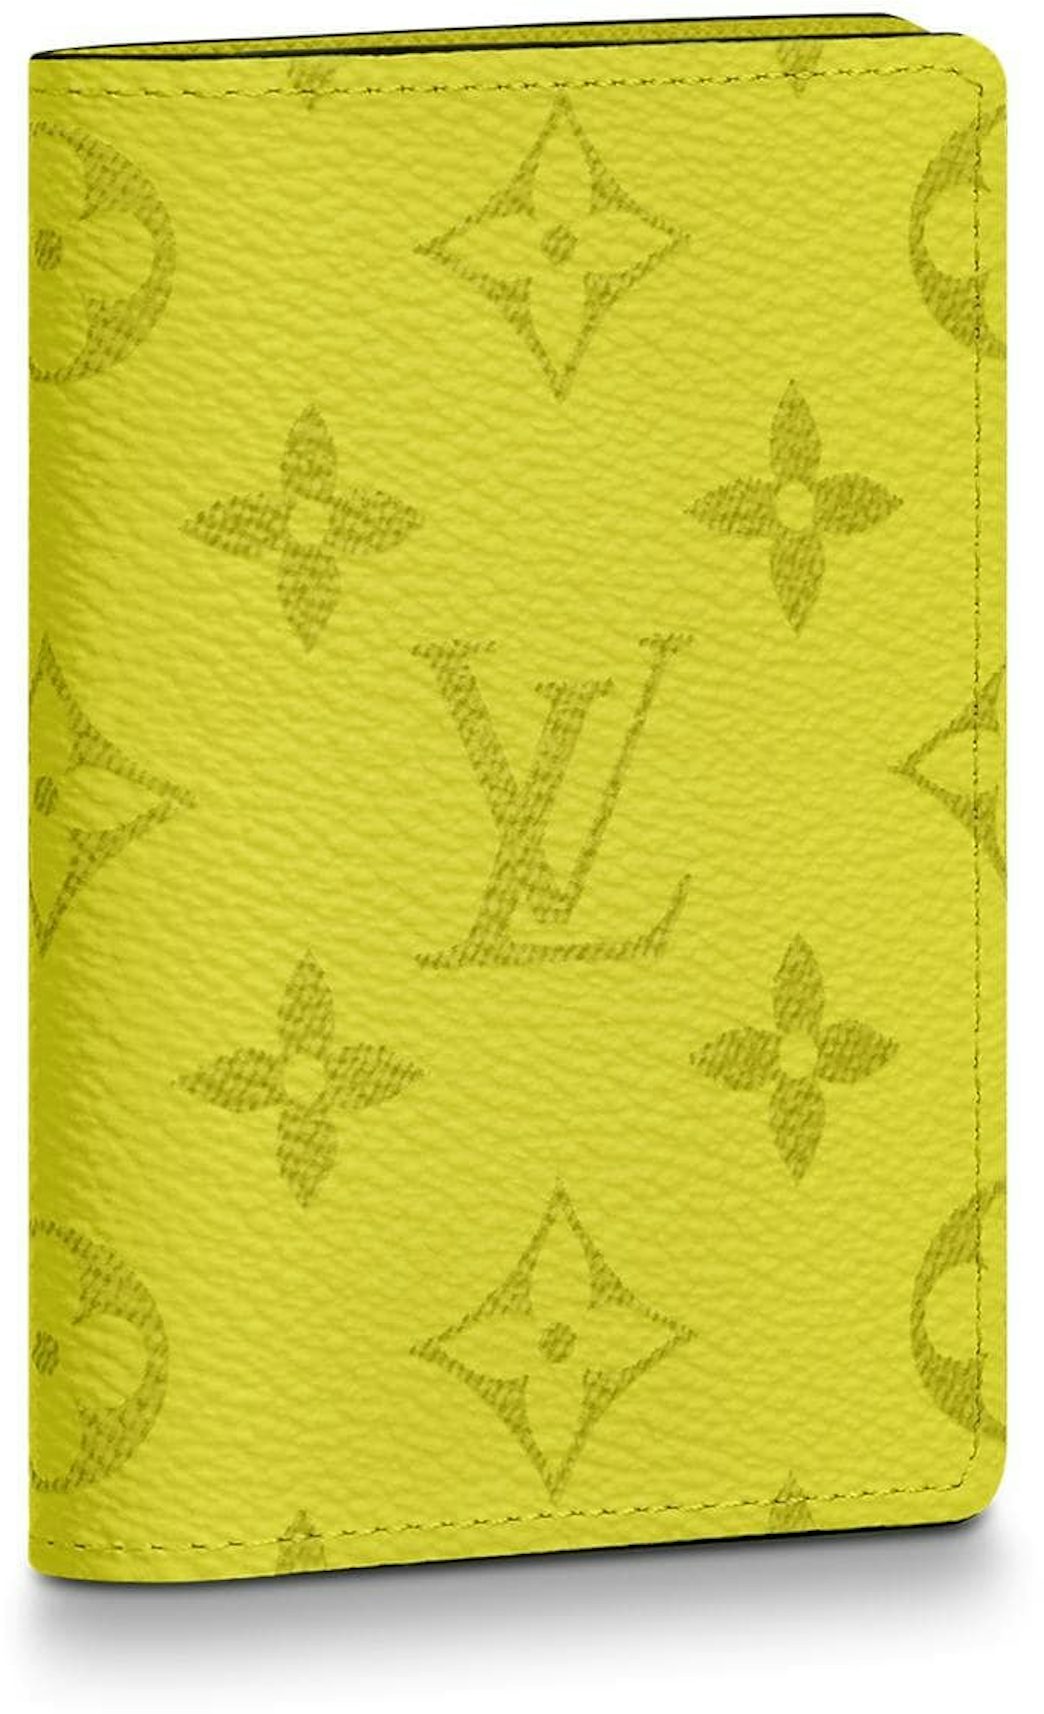 Louis Vuitton Pocket Organizer Monogram Bahia Yellow in Taiga